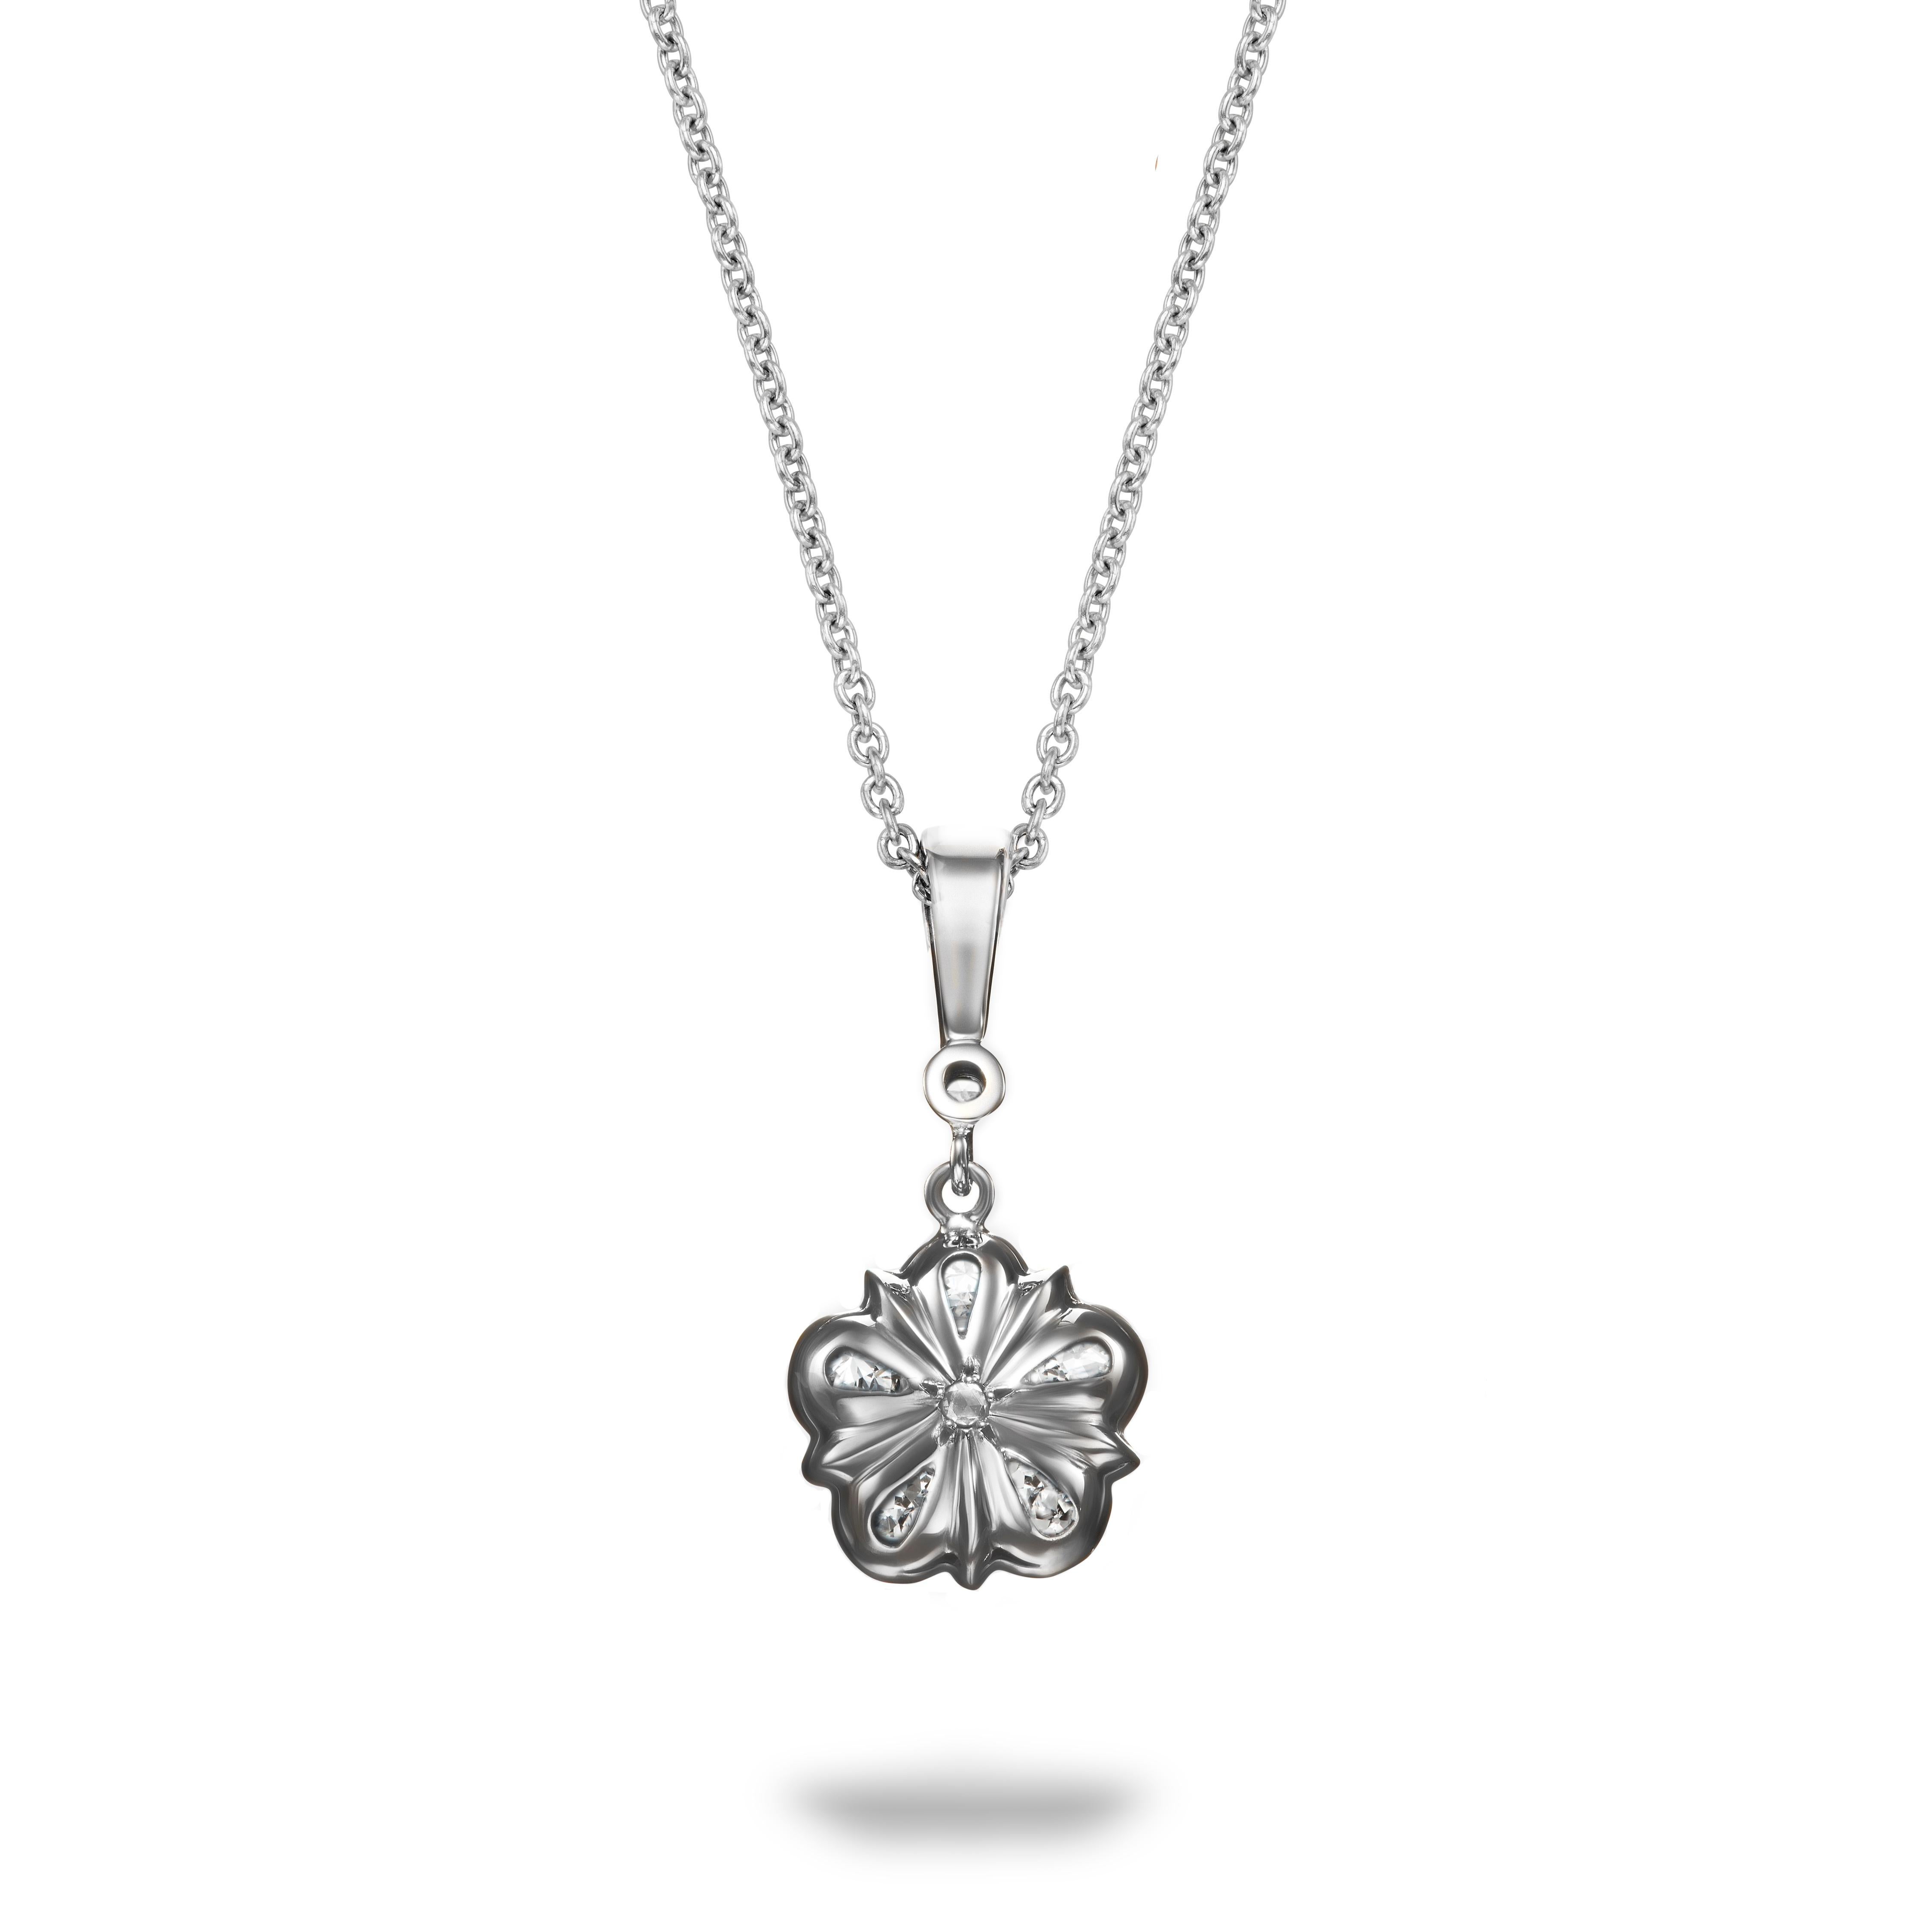 Ce superbe pendentif Rose en diamant de taille ancienne présente des diamants de taille européenne étincelants, sertis dans du platine brillant. Le pendentif est suspendu à une bague en platine avec un autre joli diamant de taille ancienne assorti.